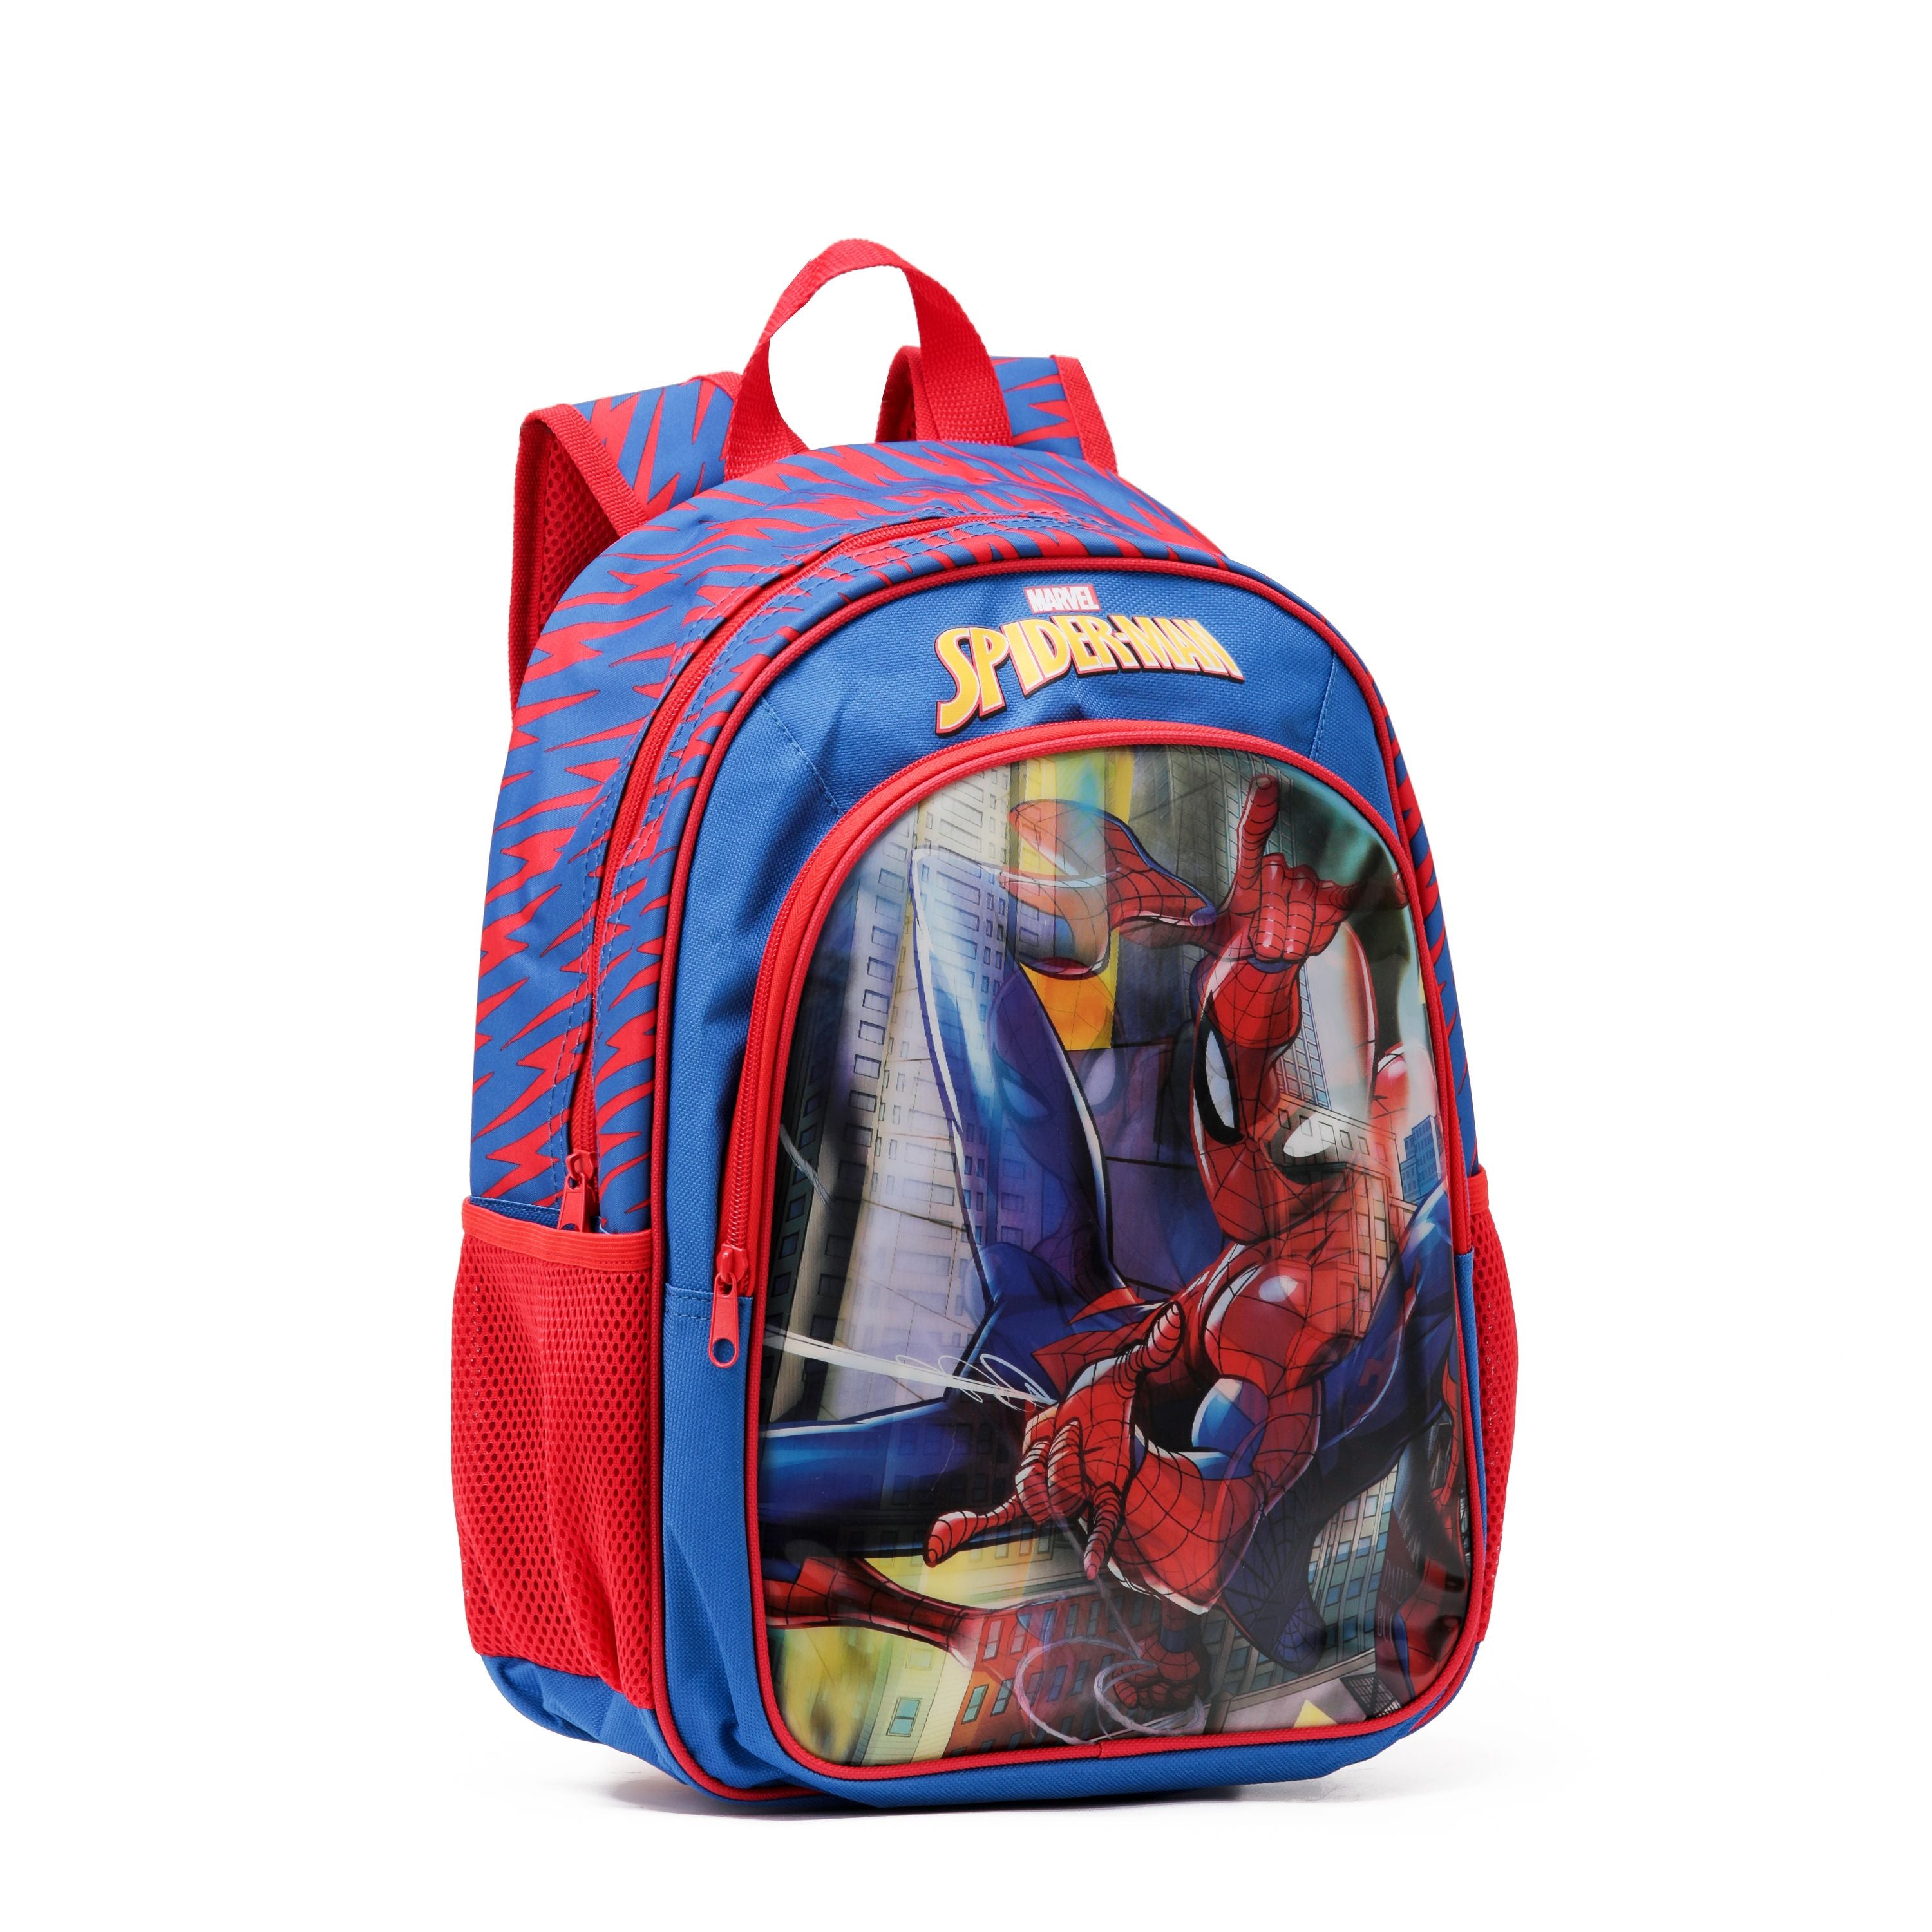 Marvel - Spider Man Mar093 15in Hologram Backpack - Red/Blue-2